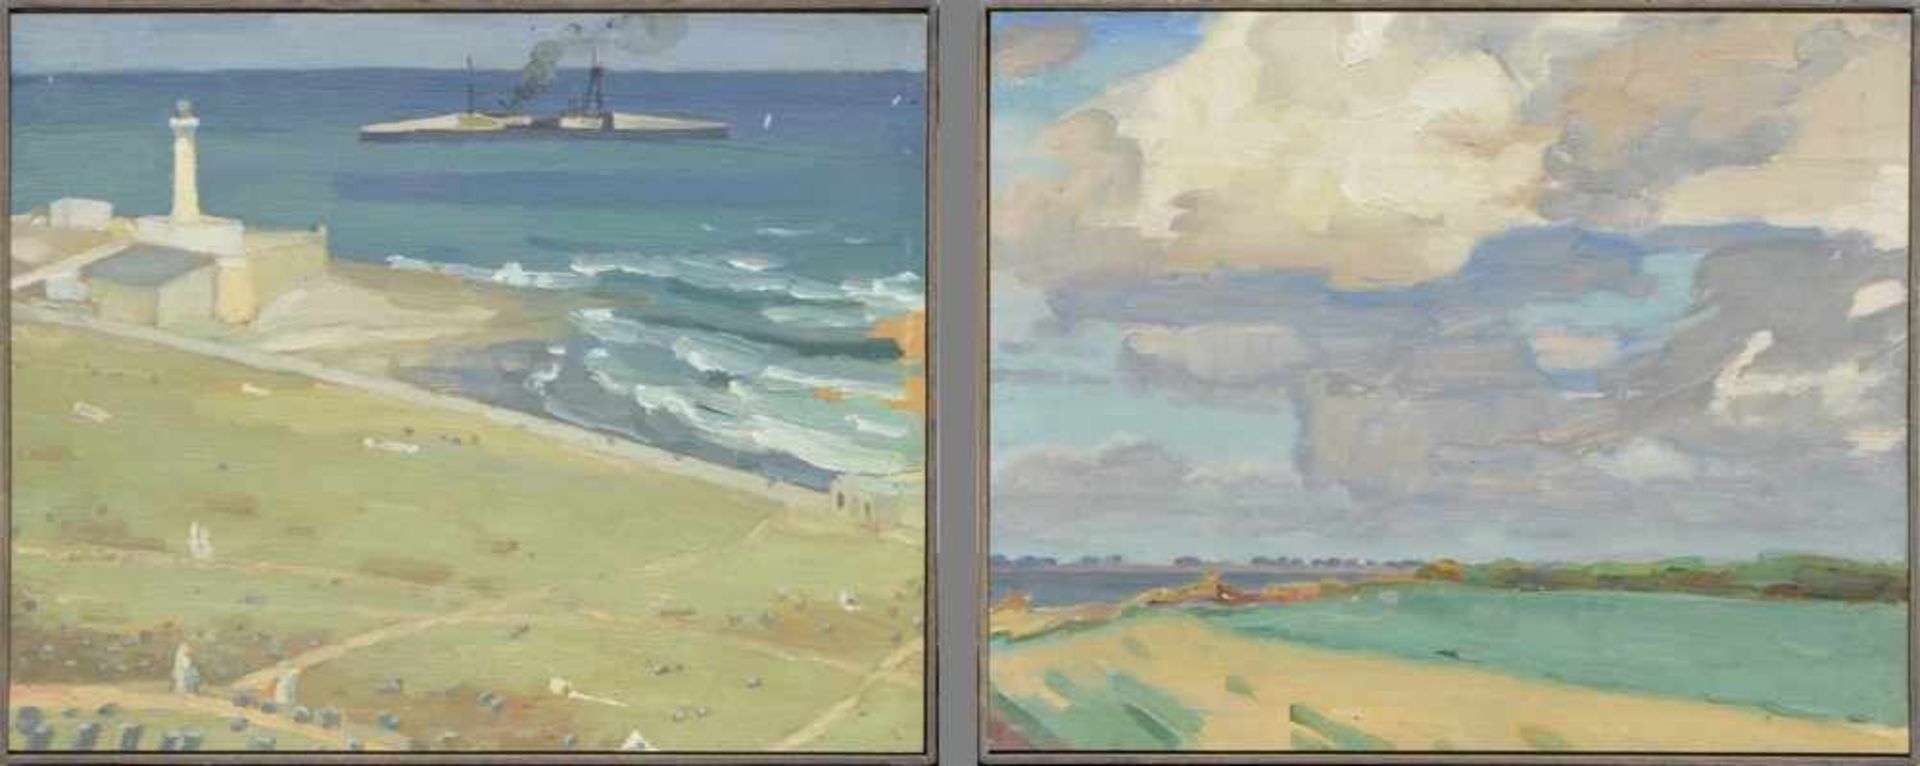 Paar Moréteau, Jules Louis (1886-1950) "Meereslandschaften", Öl/Holz, um 1927, 21x26cm